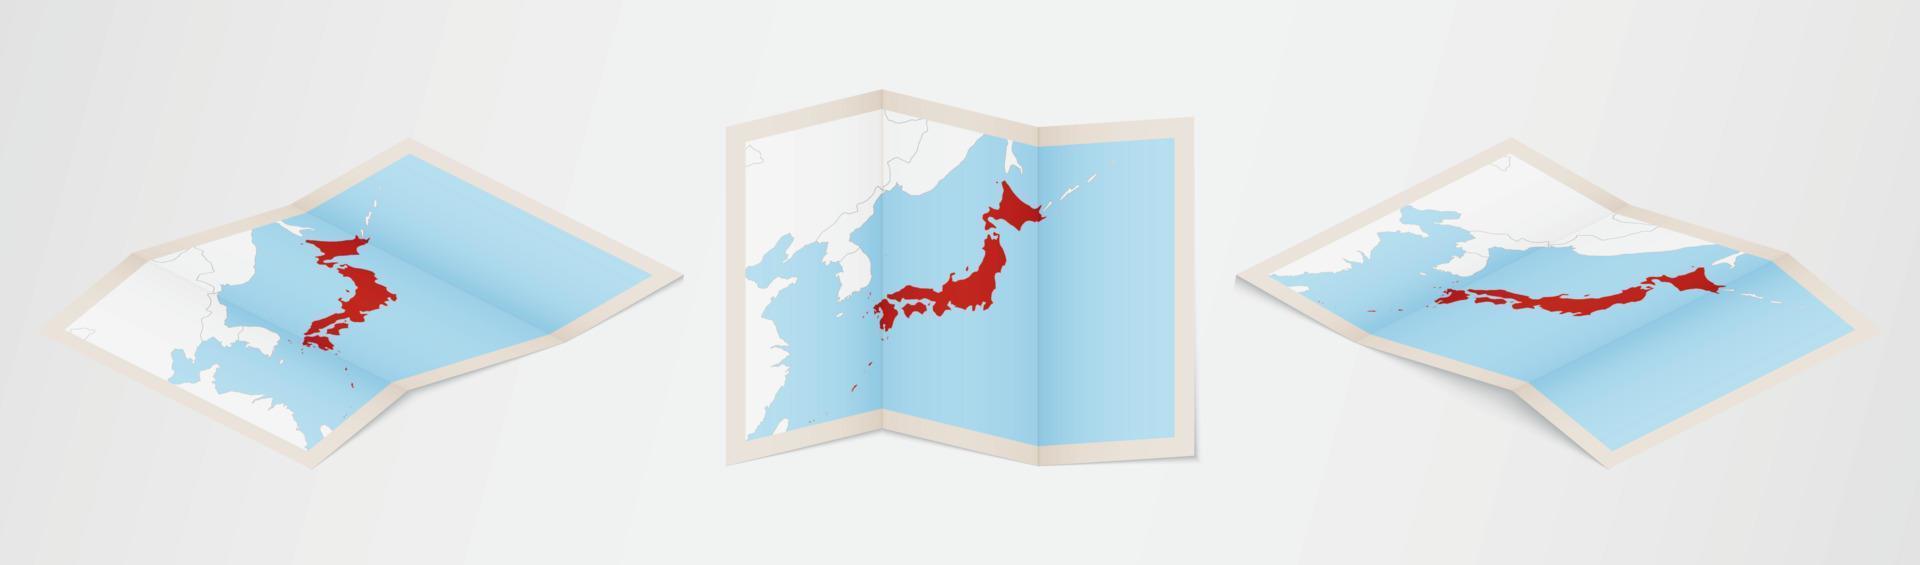 carte pliée du japon en trois versions différentes. vecteur